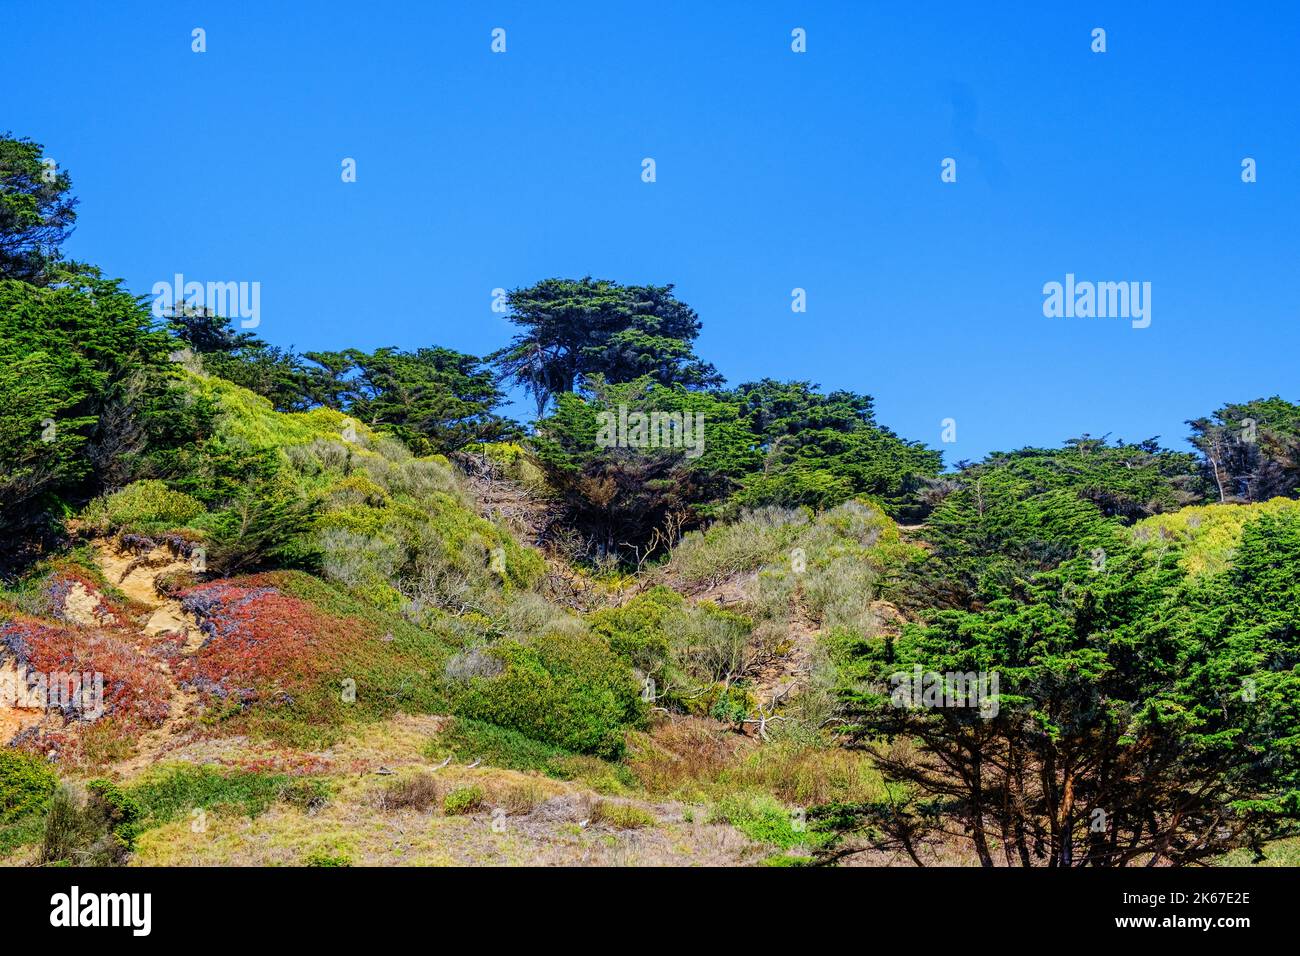 Arbres et buissons sauvages et naturels de cyprès et d'eucalyptus à Lands End Costal Trail, nord-ouest de San Francisco, Californie, États-Unis Banque D'Images